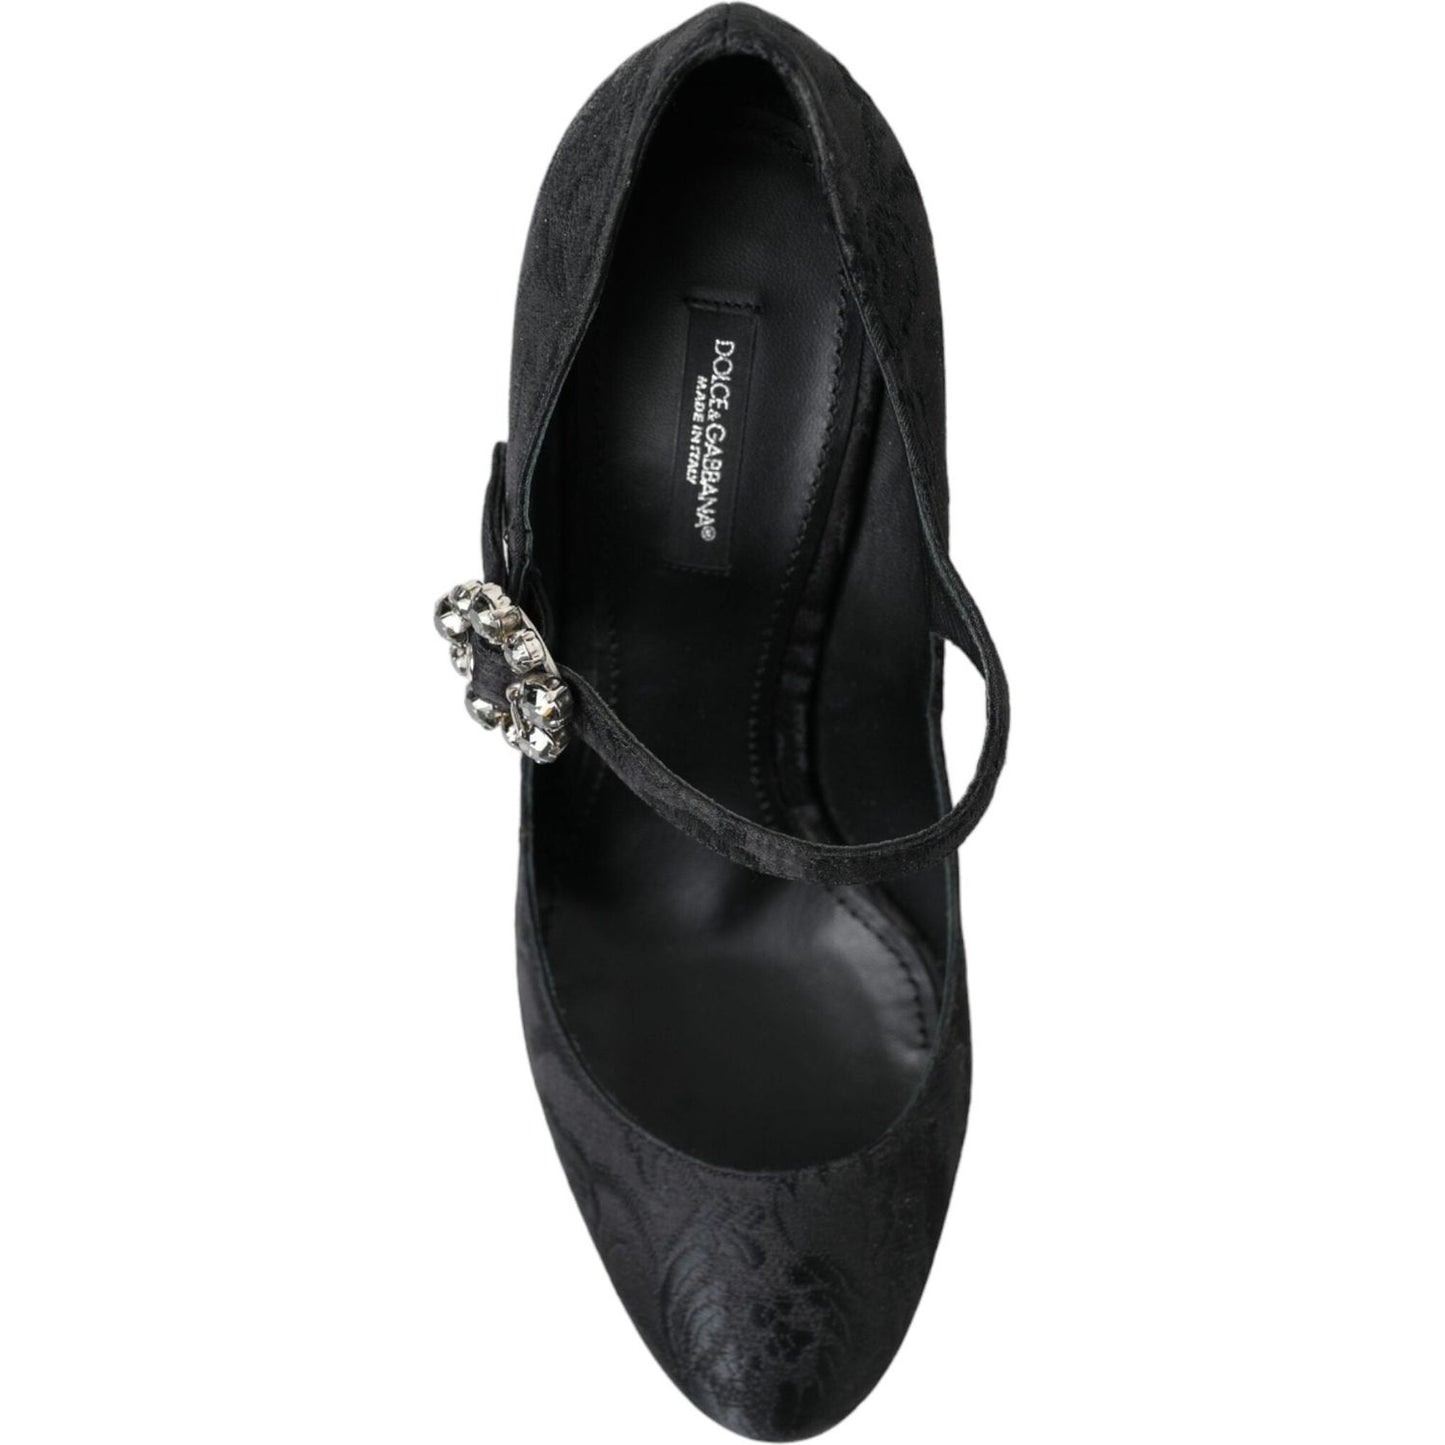 Dolce & GabbanaChic Black Brocade Mary Janes PumpsMcRichard Designer Brands£419.00